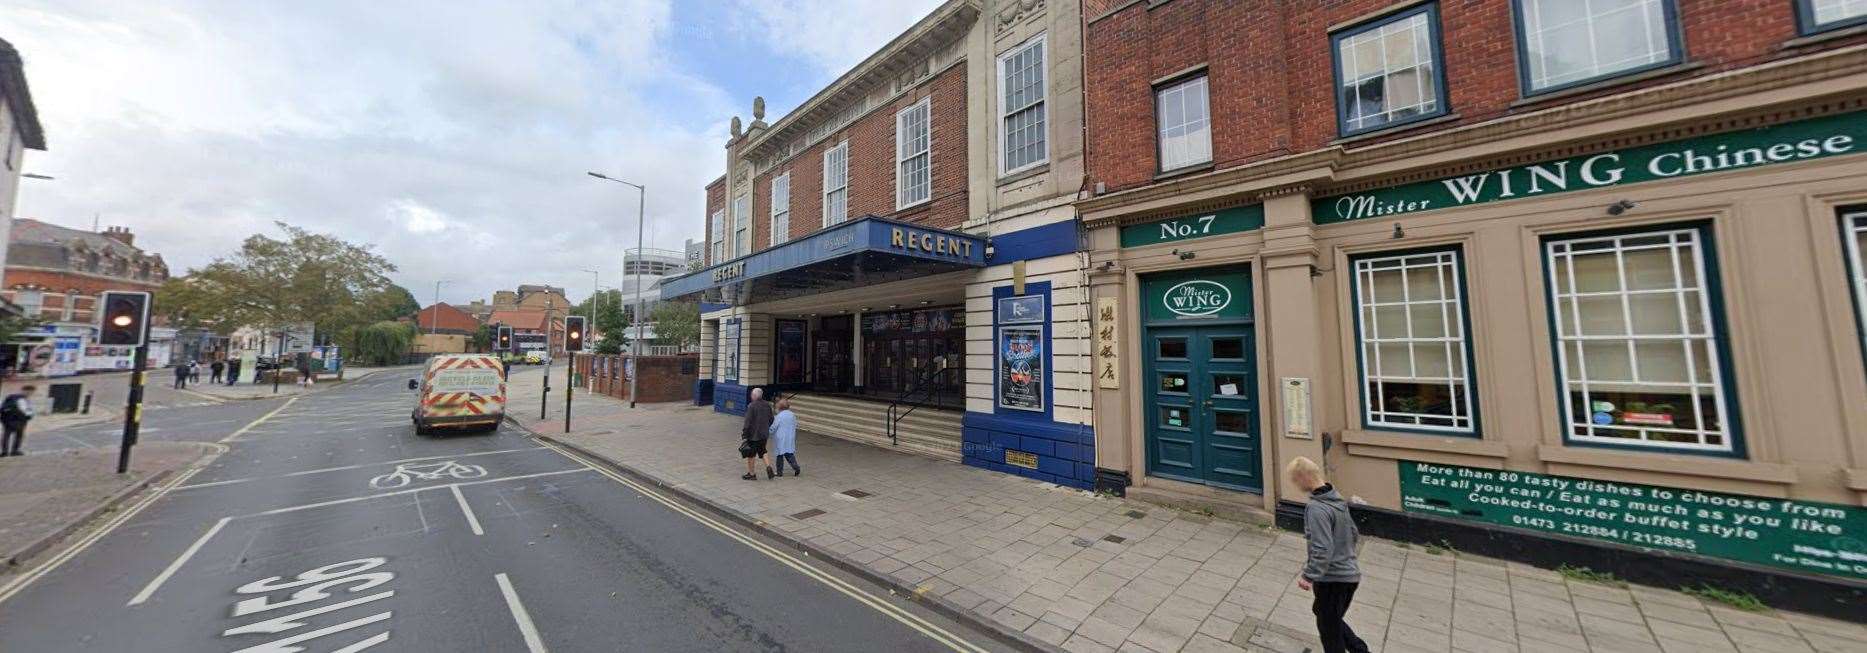 Ipswich Regent. Picture: Google Streetview